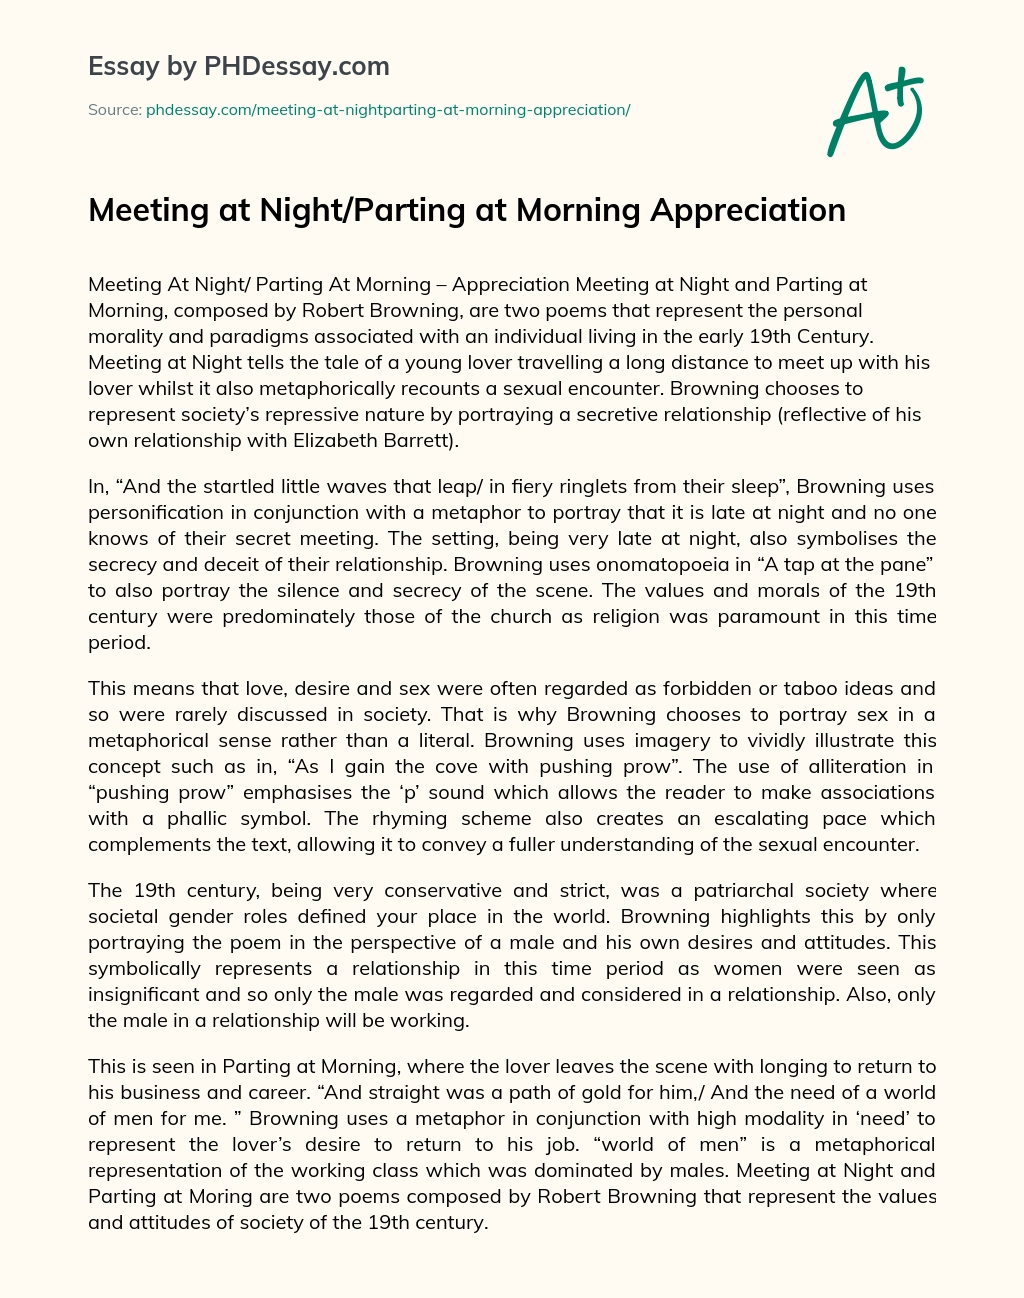 Meeting at Night/Parting at Morning Appreciation essay